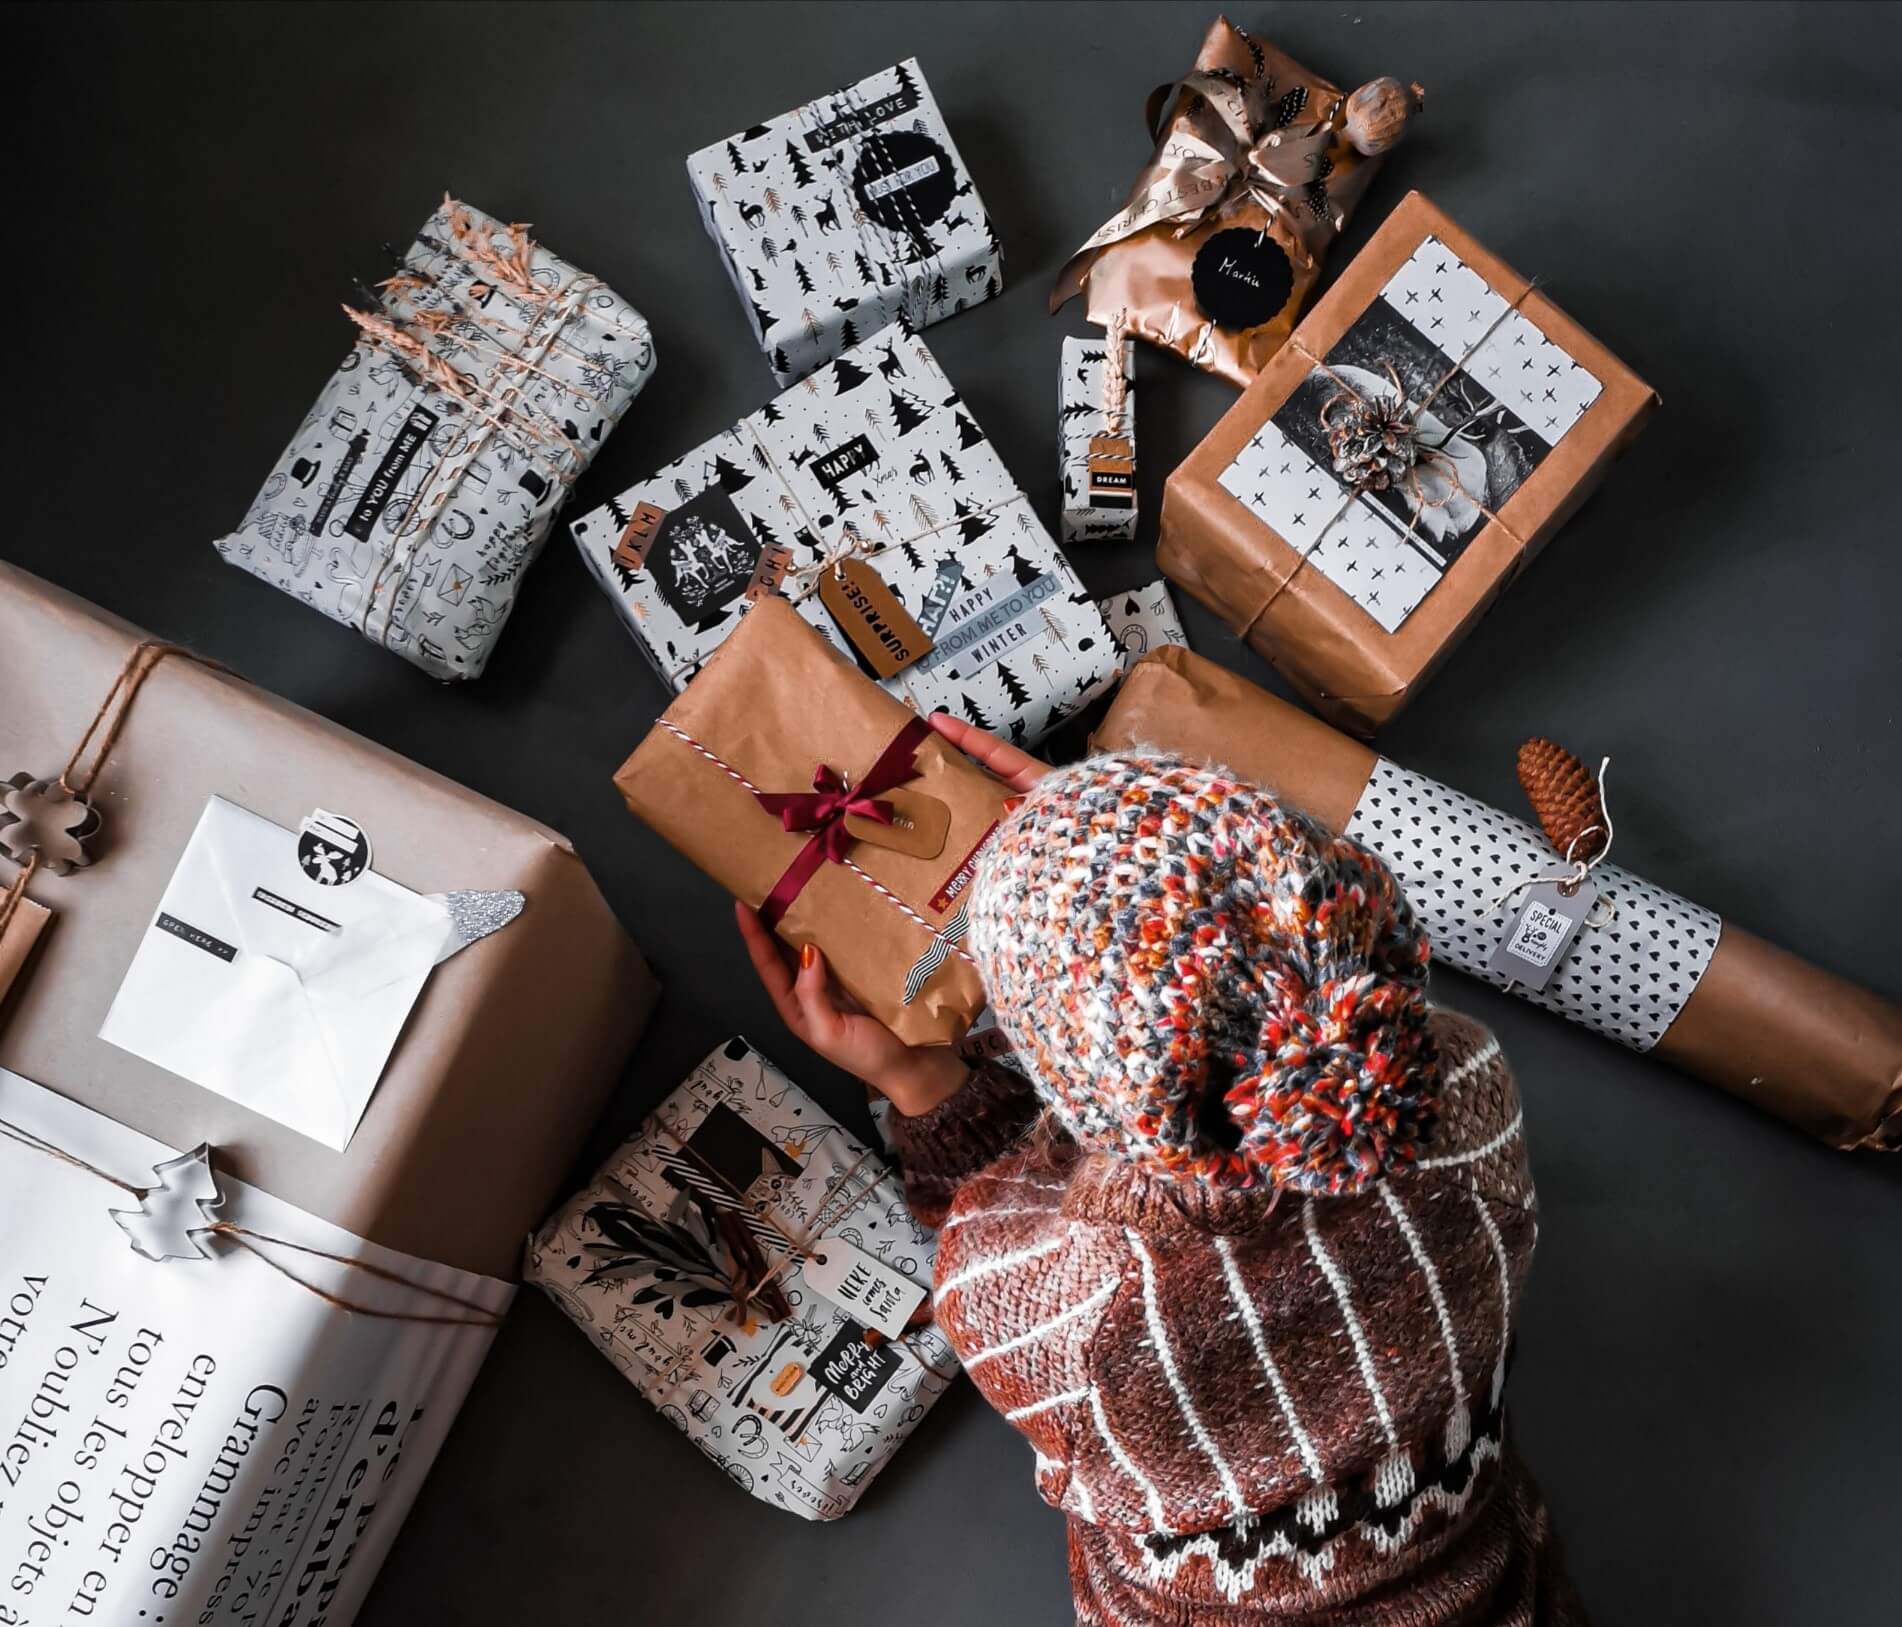 IMG 20191208 140034 resized 20191208 060151711 - Geschenke verpacken: 11 kreative Tipps zum Selbermachen